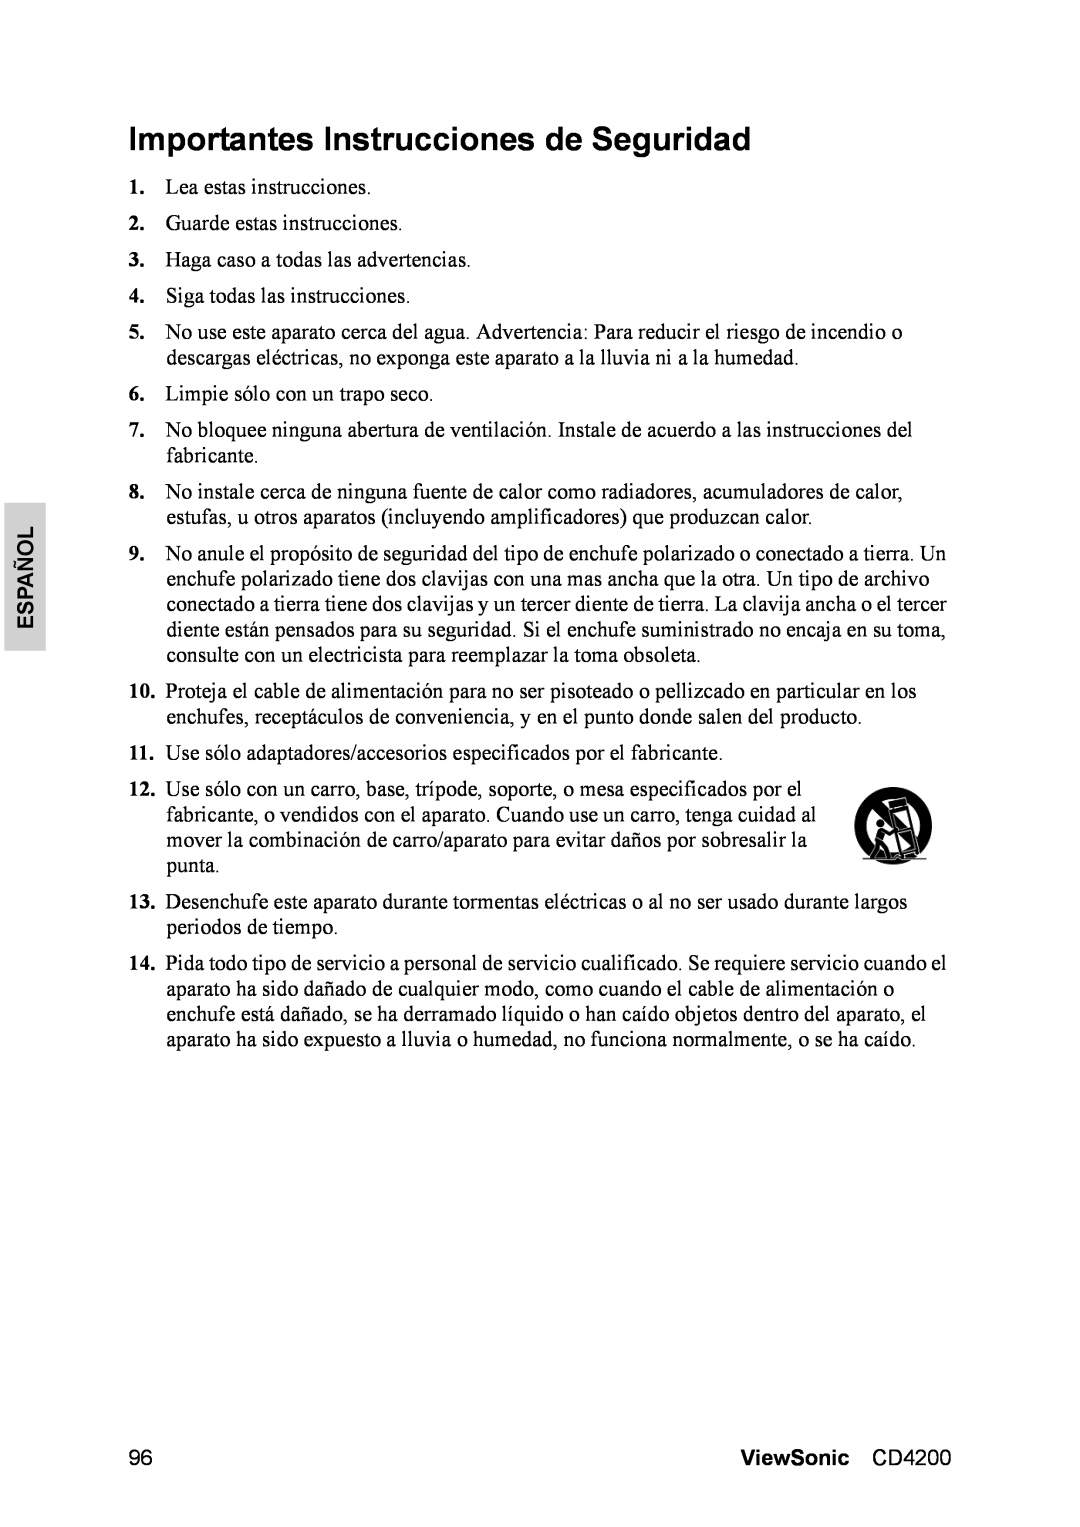 ViewSonic manual Importantes Instrucciones de Seguridad, Español, ViewSonic CD4200 